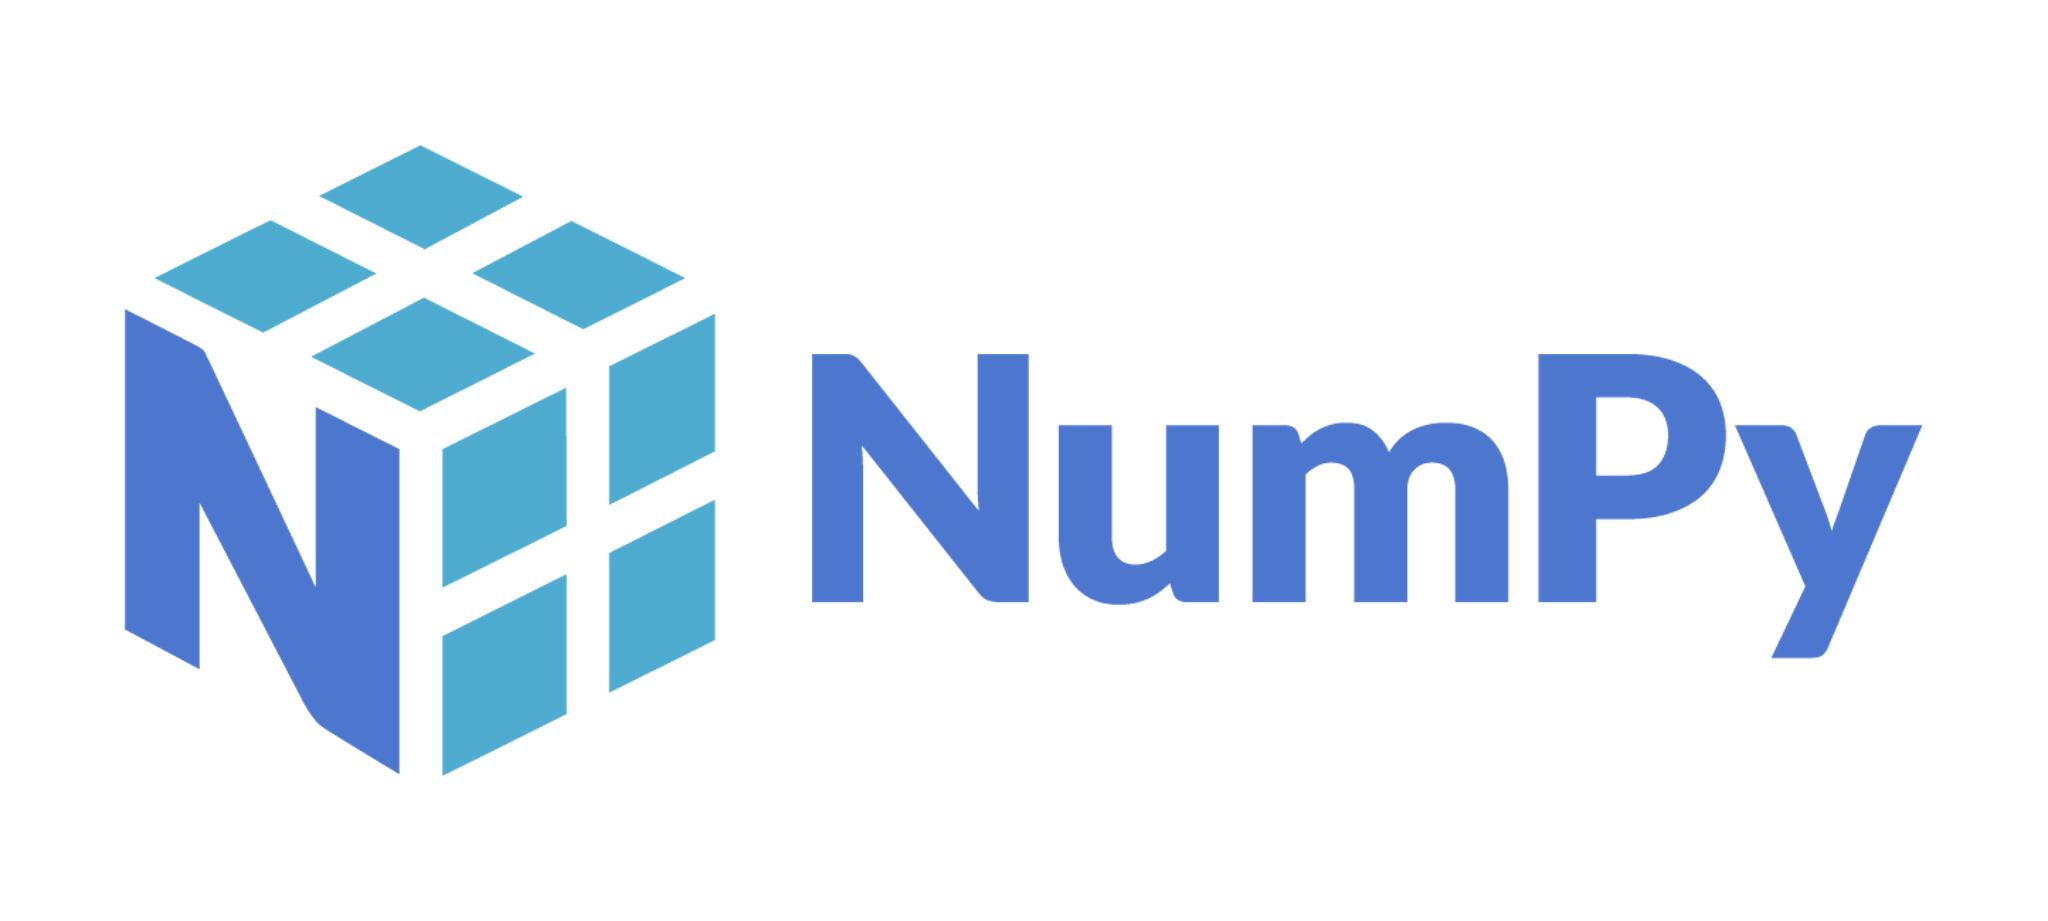 【NumPy】NumPy配列の作成